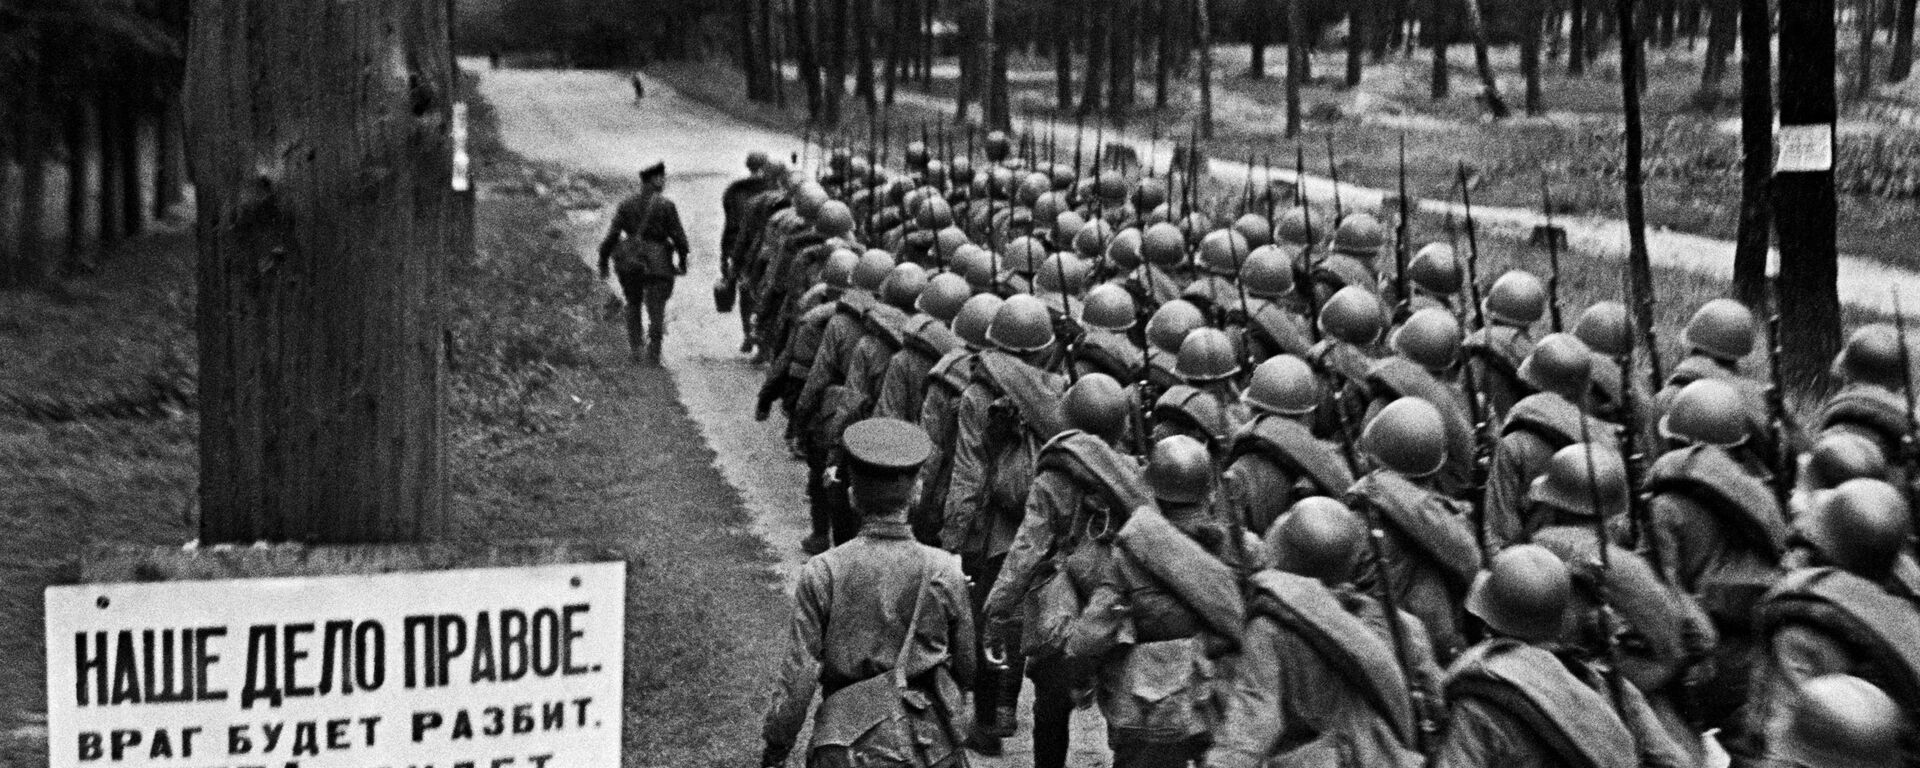 Колонны бойцов движутся на фронт из Москвы, 23 июня 1941 года - Sputnik Абхазия, 1920, 14.11.2021